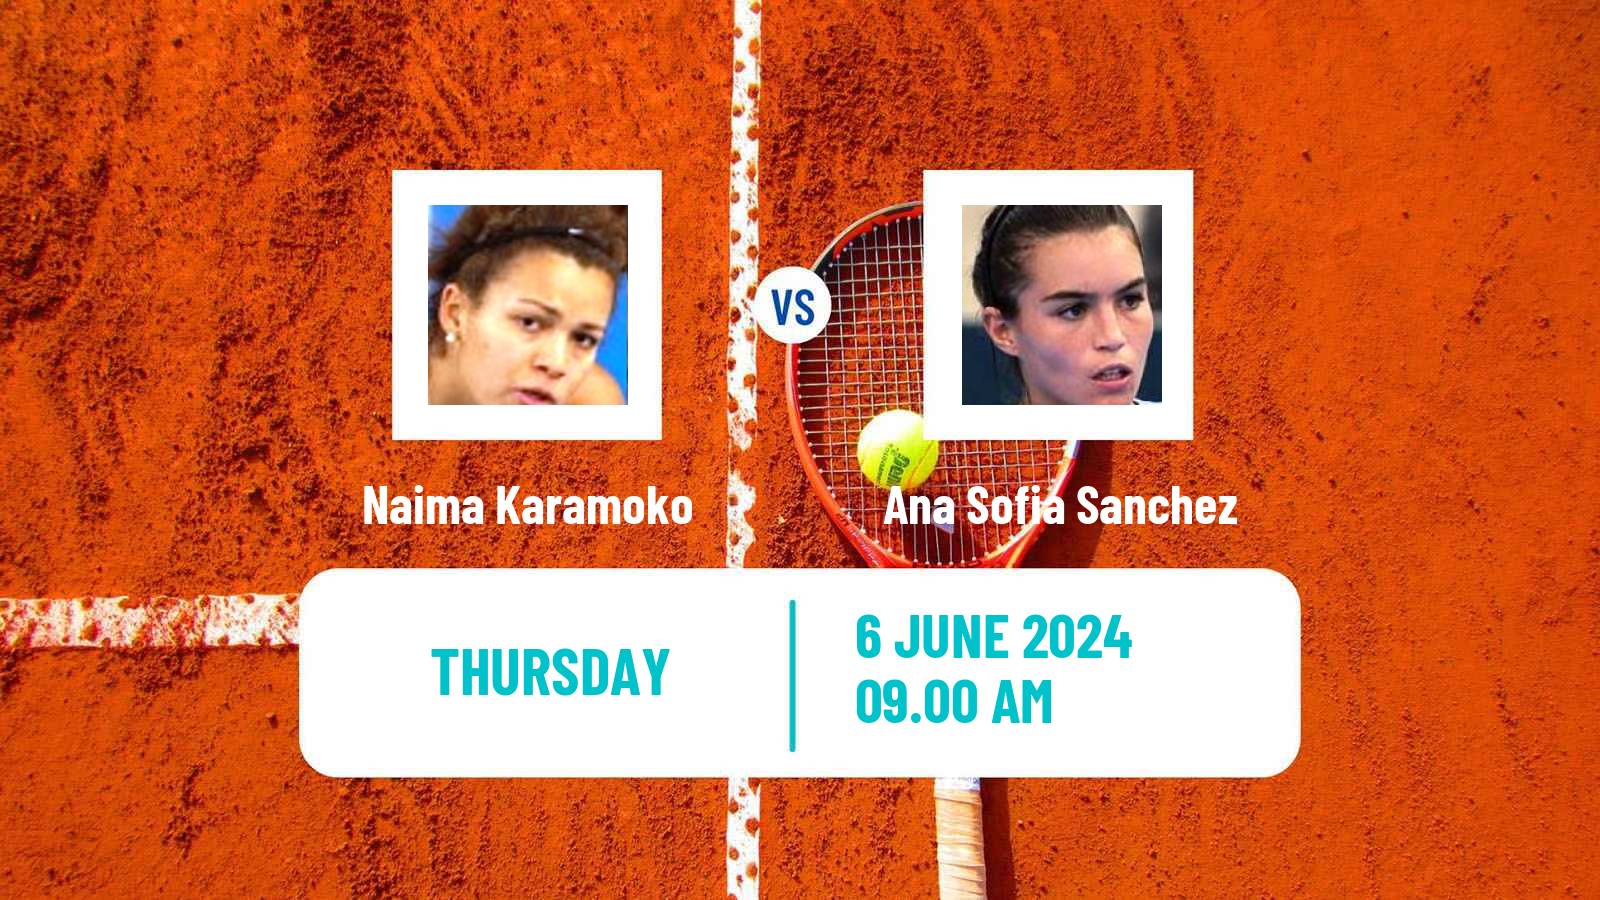 Tennis ITF W50 La Marsa Women Naima Karamoko - Ana Sofia Sanchez